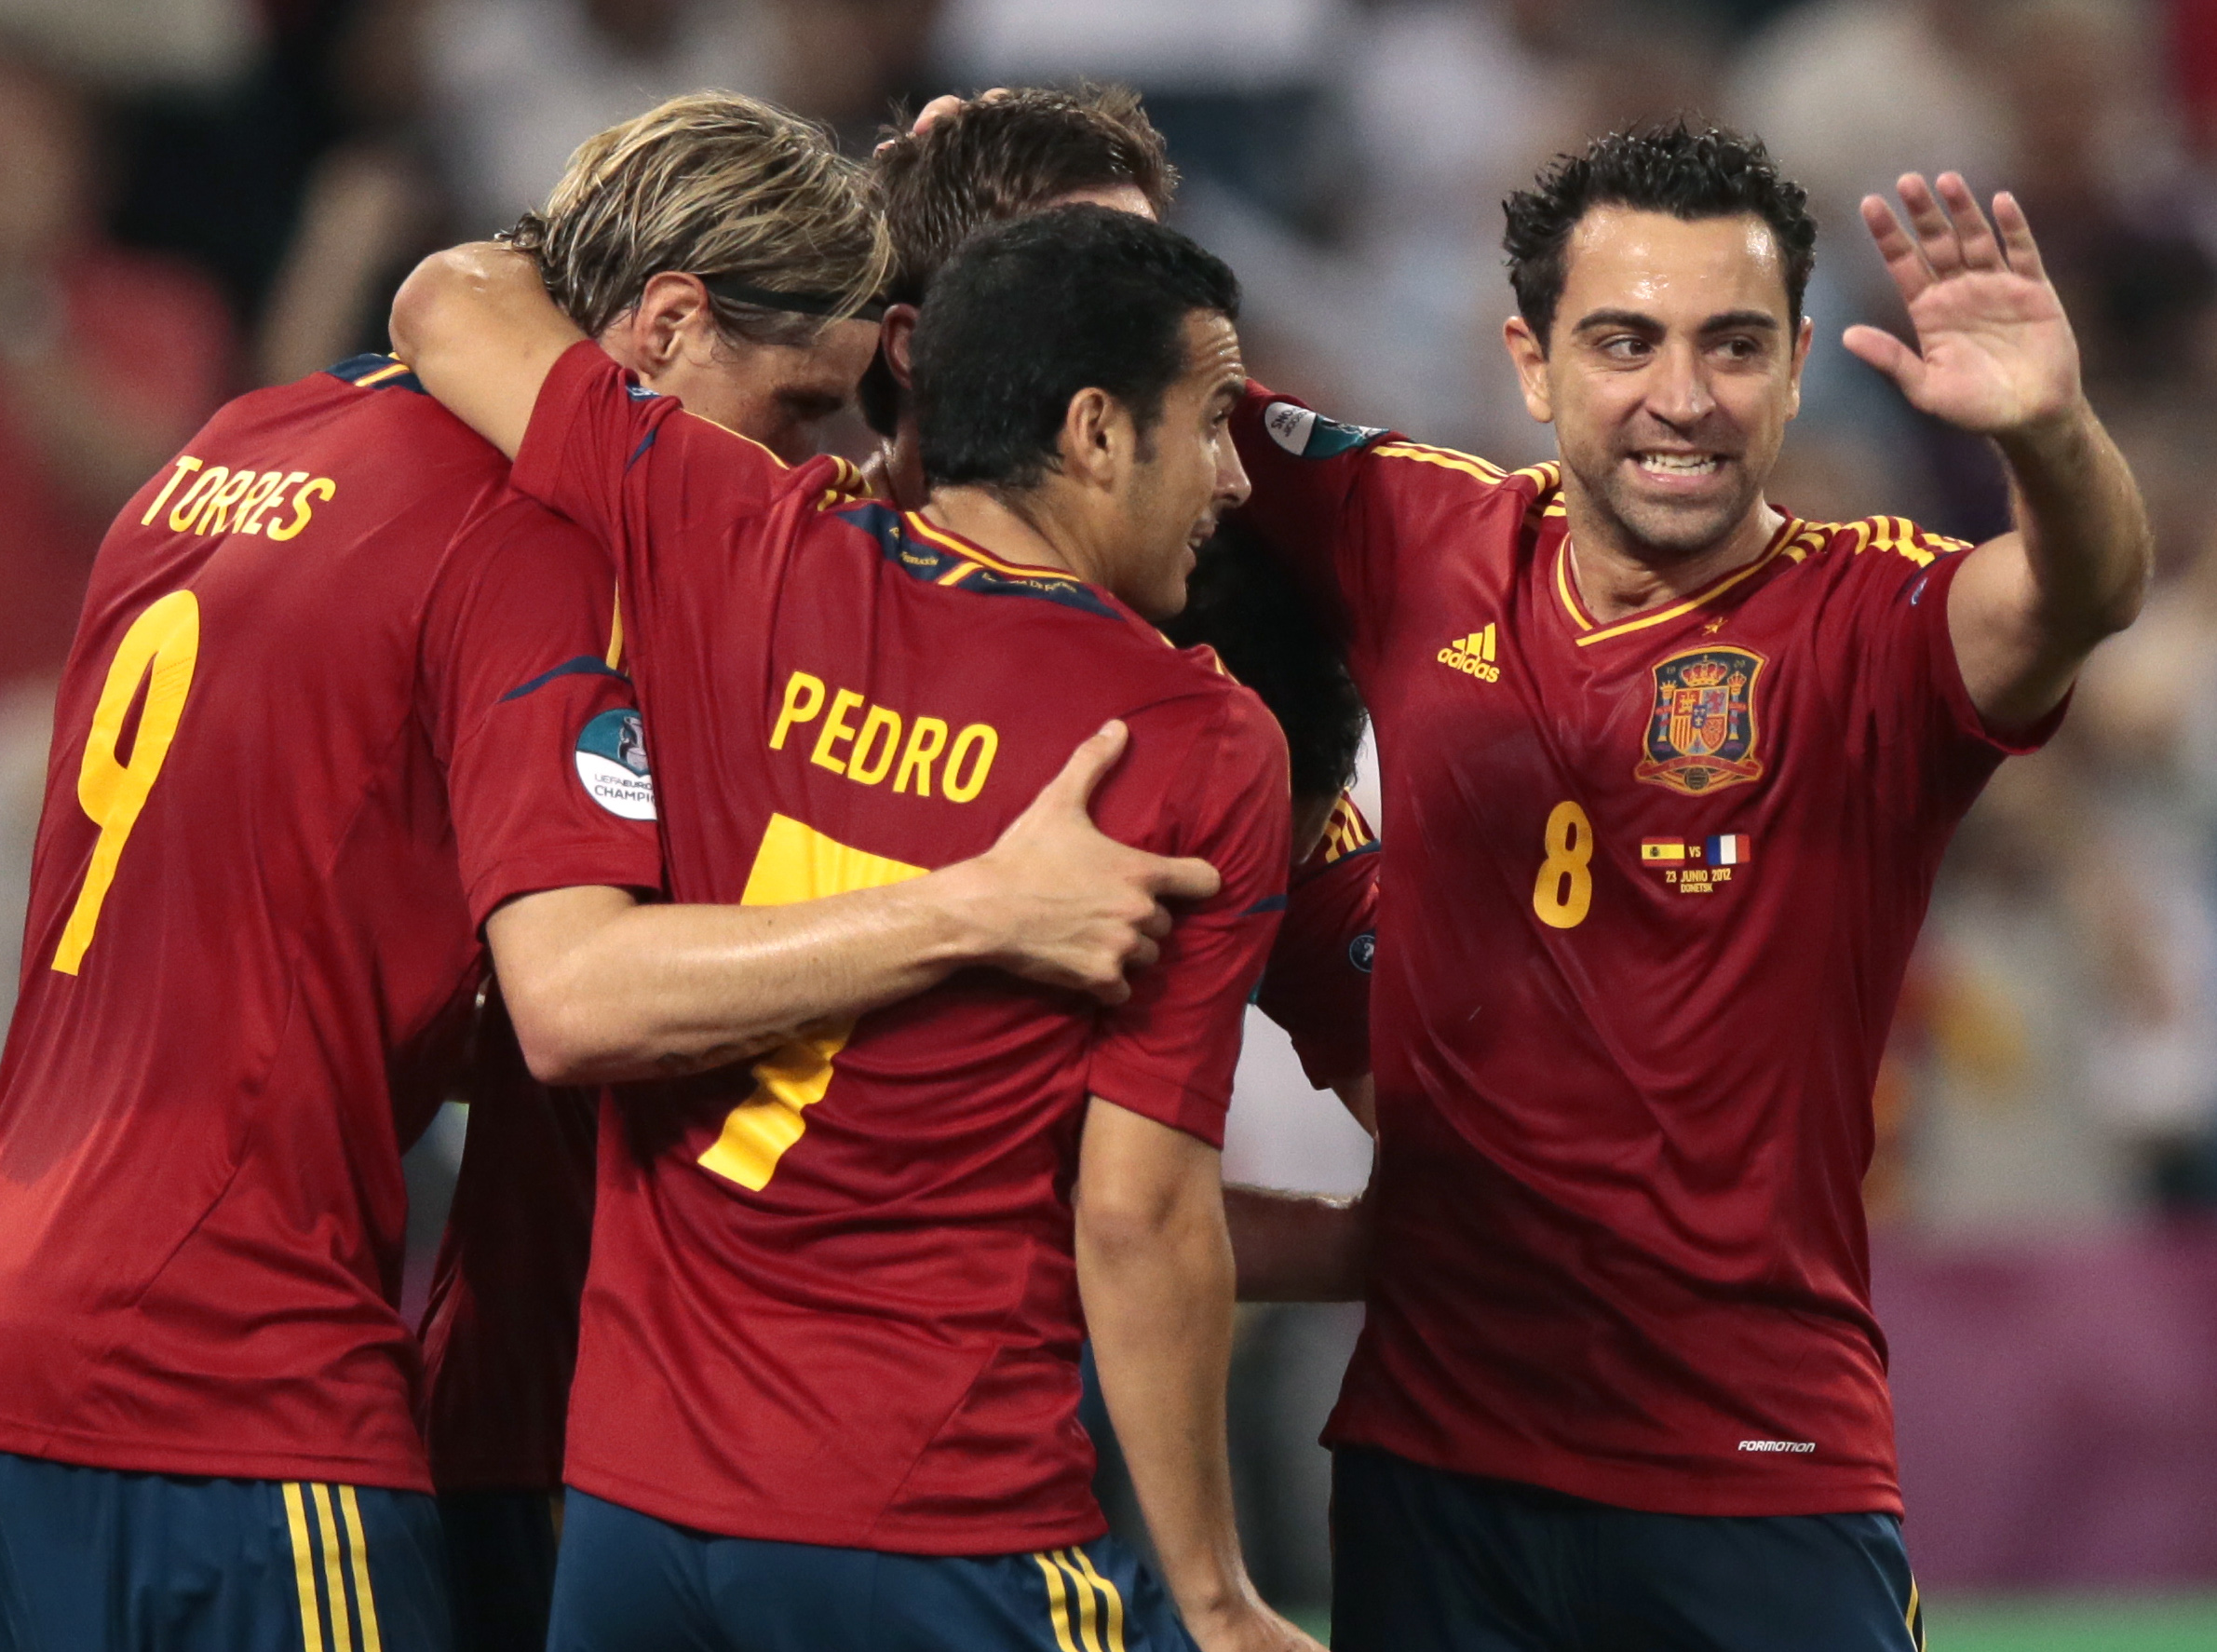 Fotboll, Final, EM, Spanien, Iker Casillas, Italien